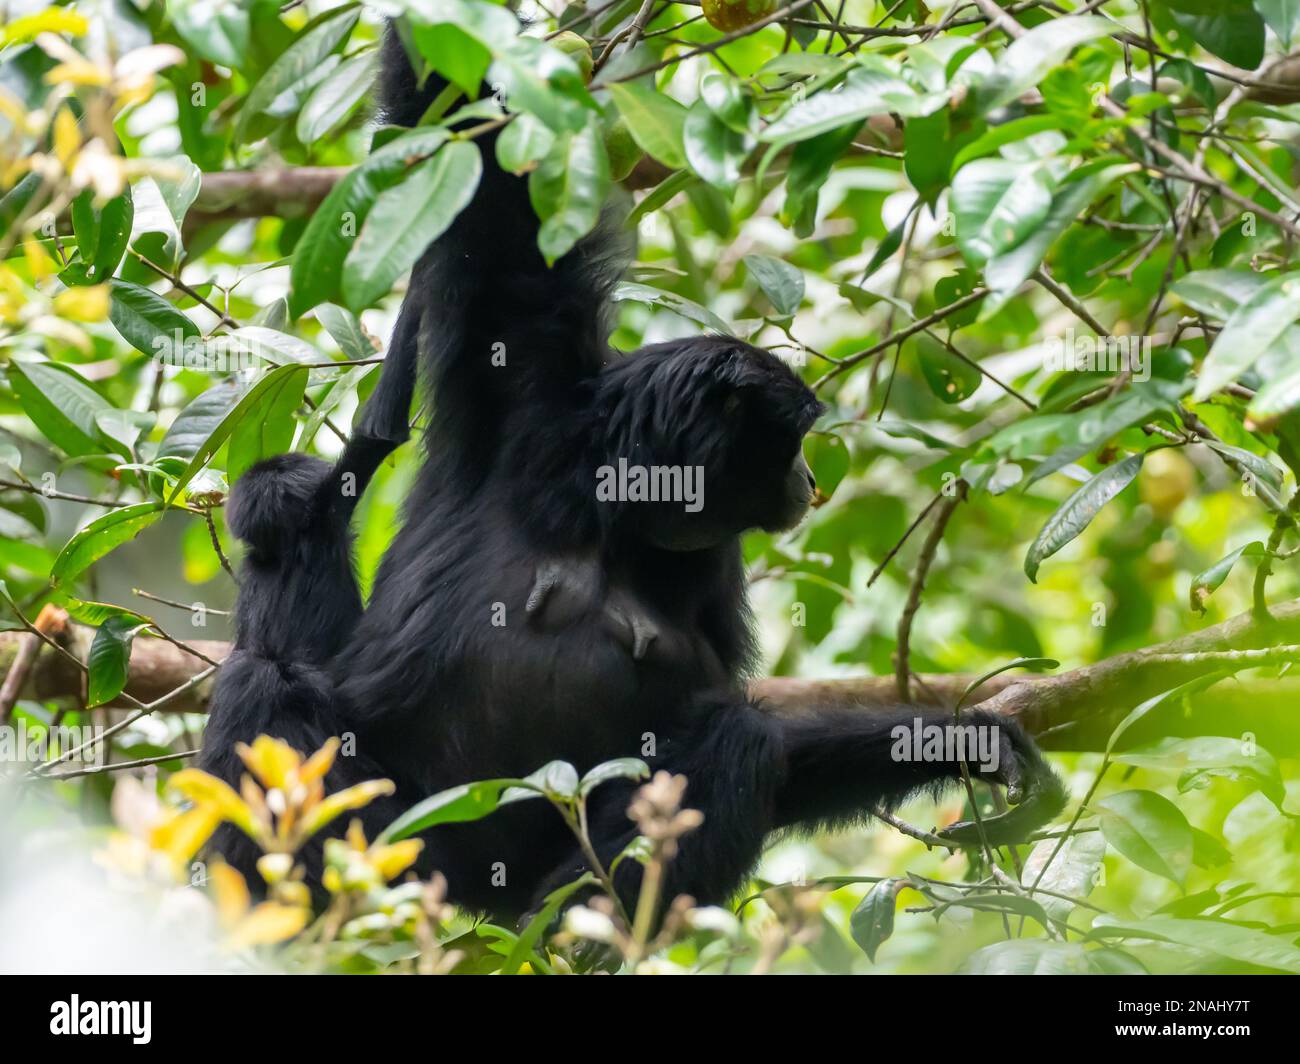 Siamang, Symphalange syndactylus, la plus grande espèce de gibbons, et espèces menacées de Malaisie Banque D'Images